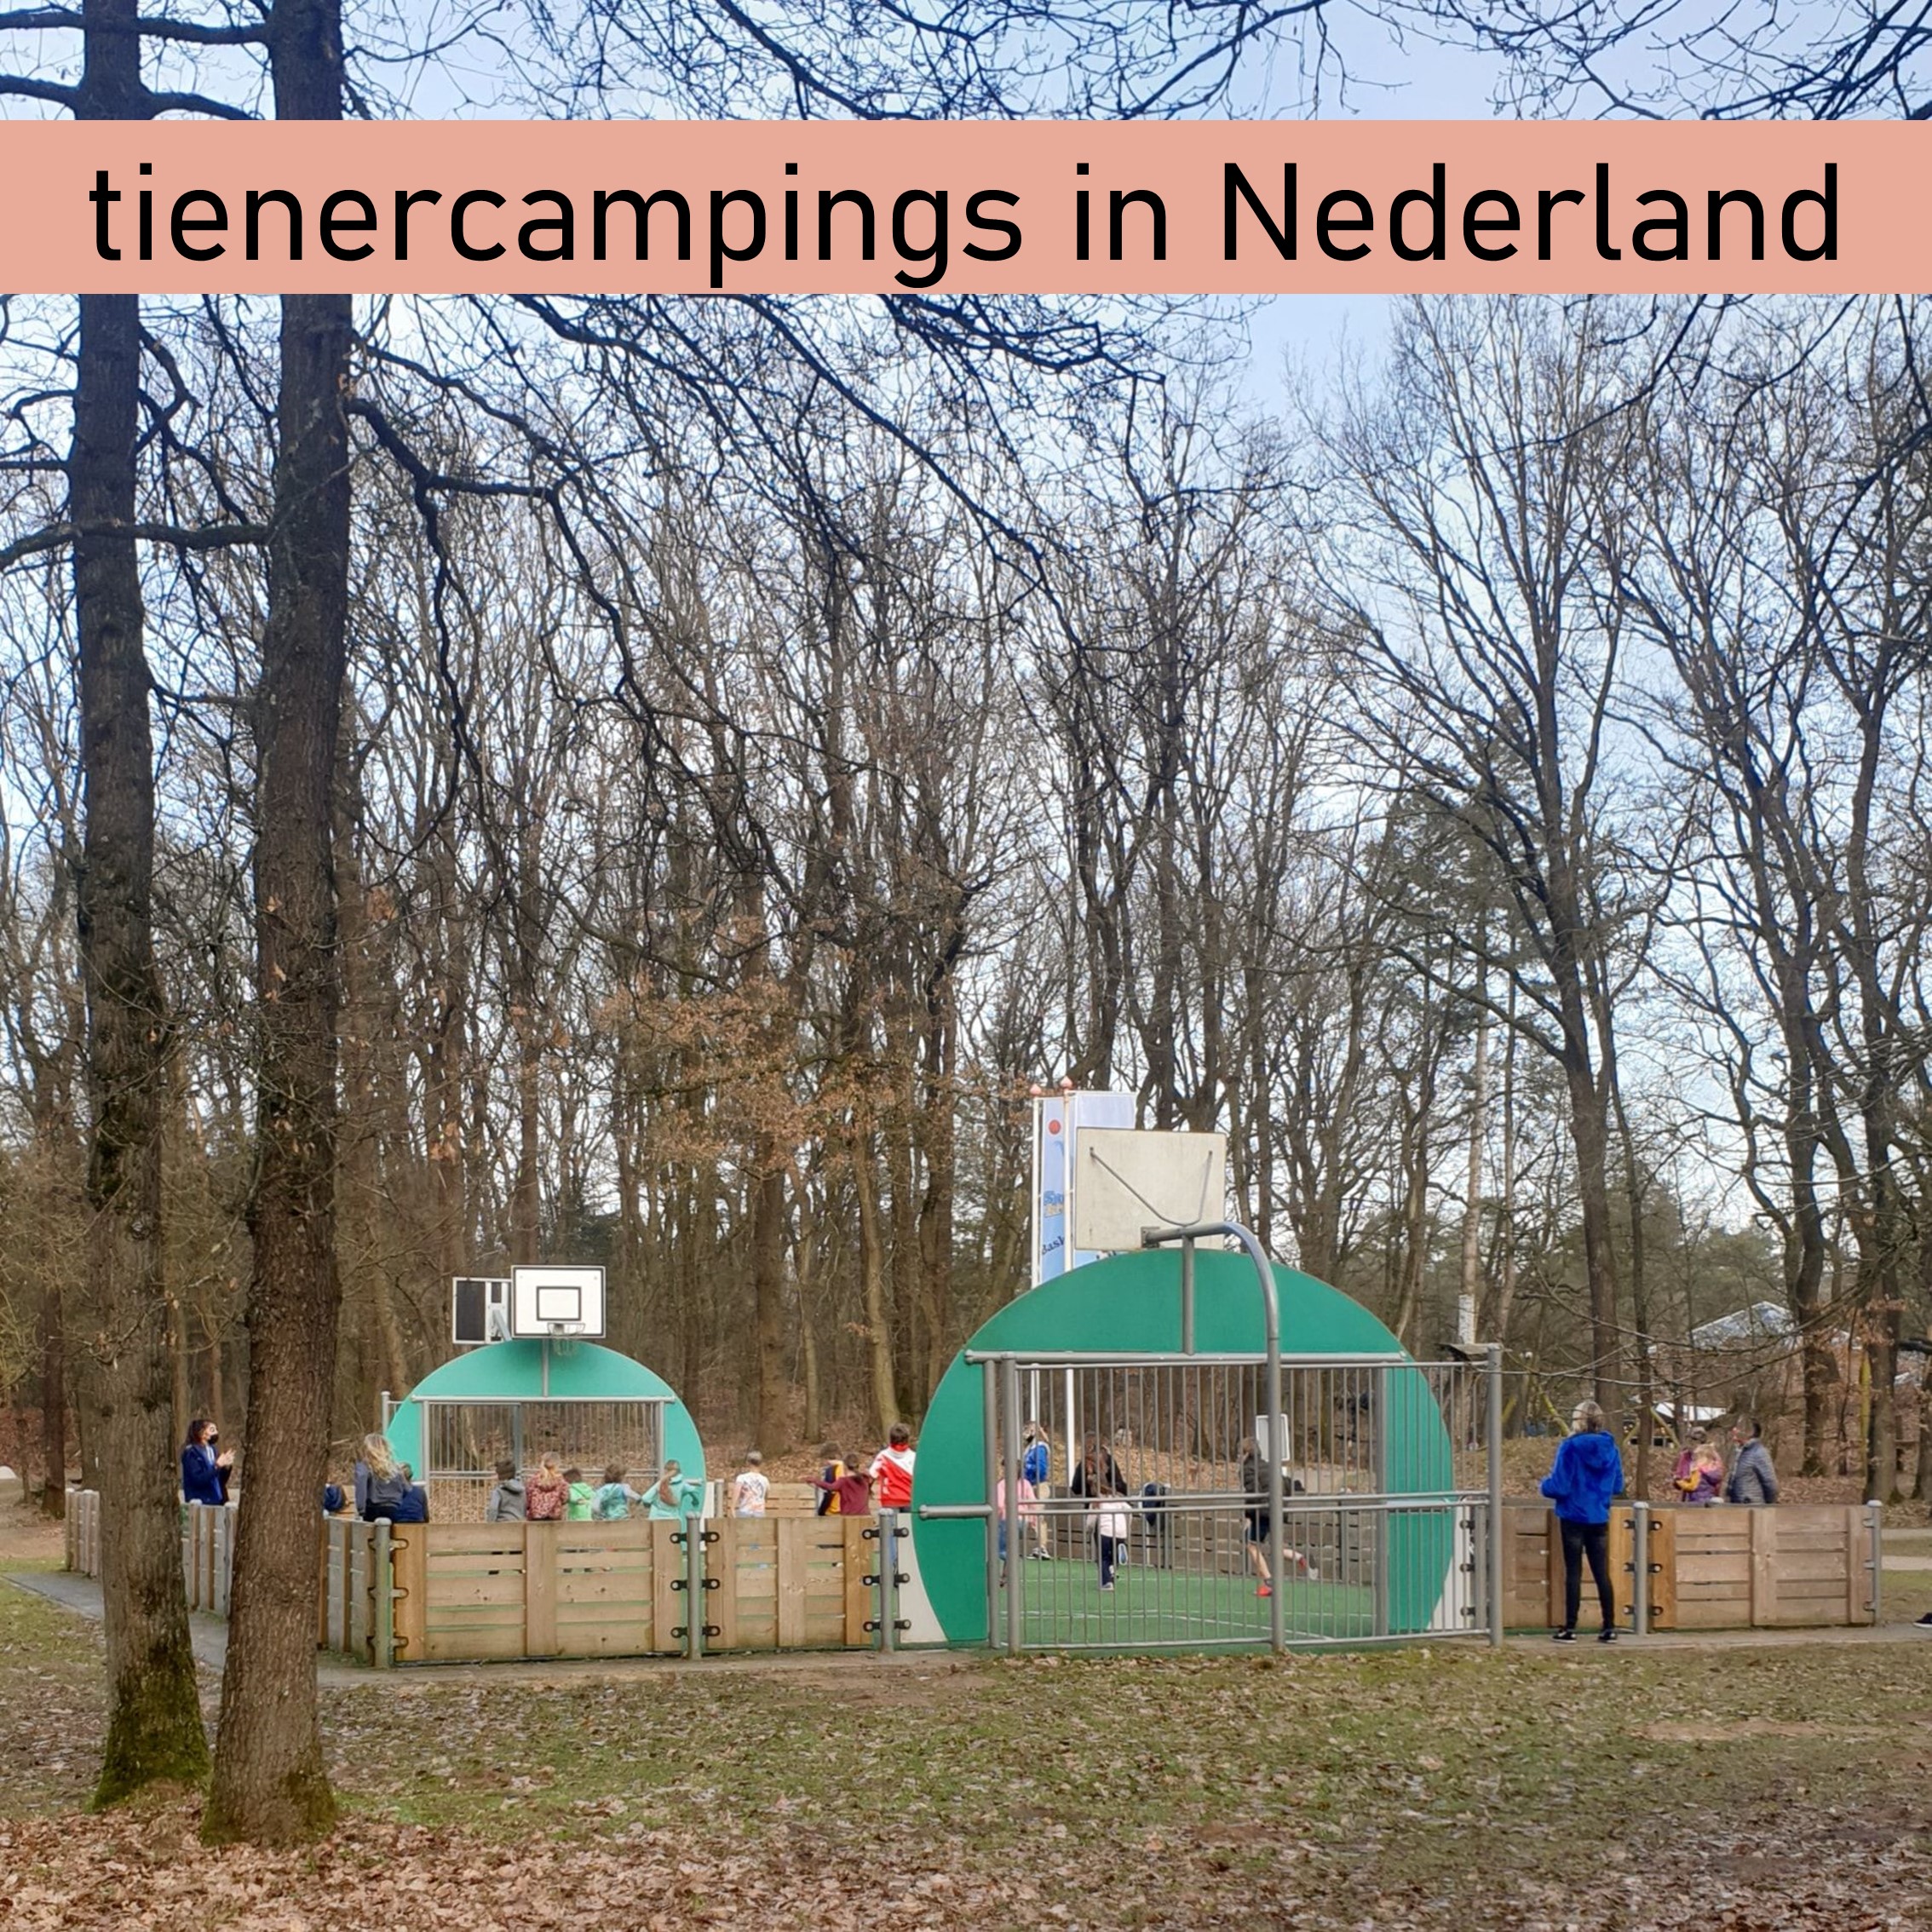 101 camping tips voor tieners in Nederland, die ook leuk zijn voor ouders. Dit is Landal Rabbit Hill